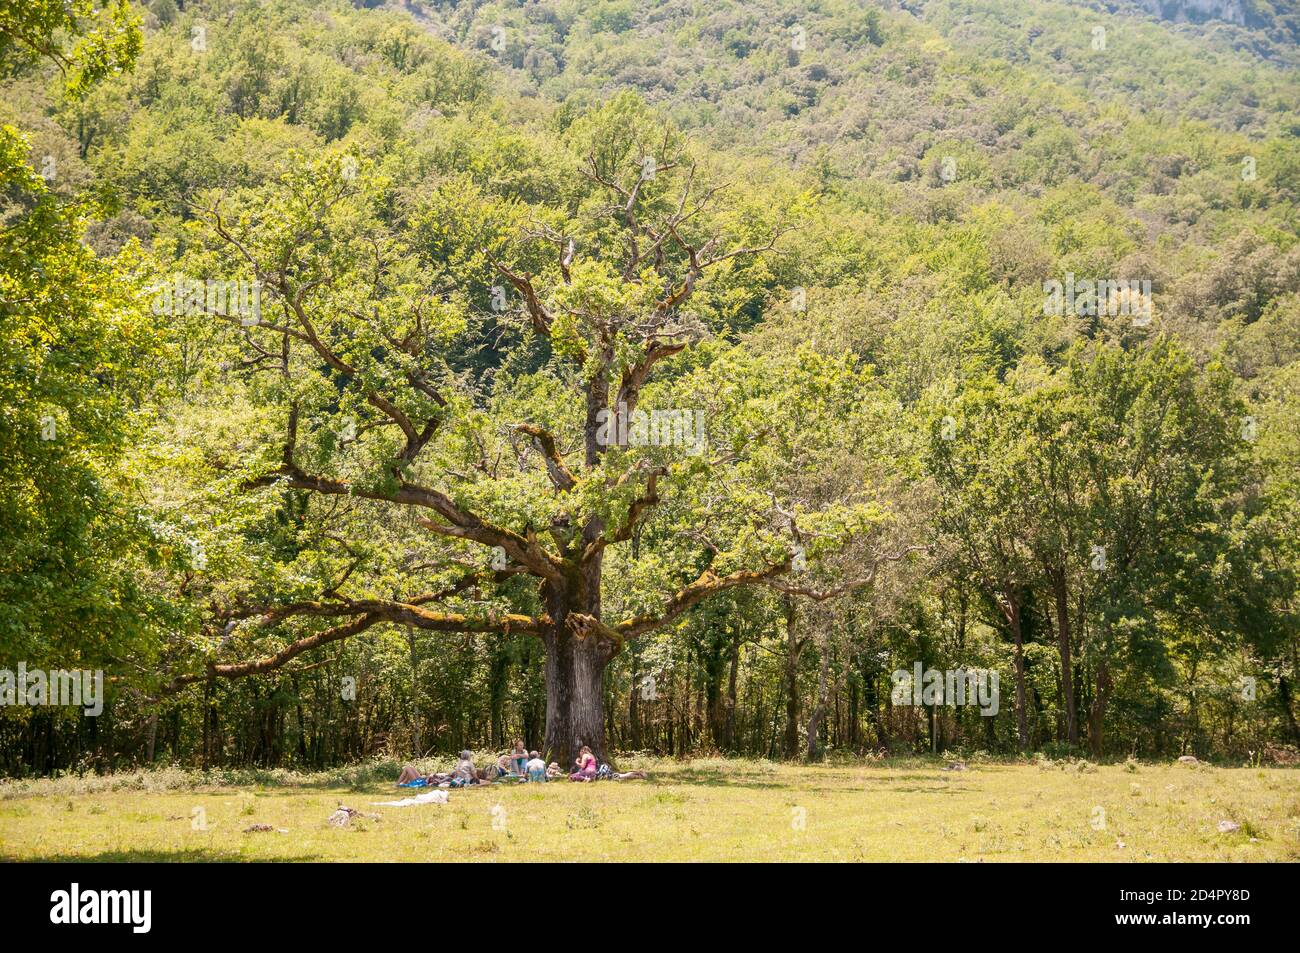 Groupe de personnes sous un chêne européen, Quercus robur, Catalogne, Espagne Banque D'Images